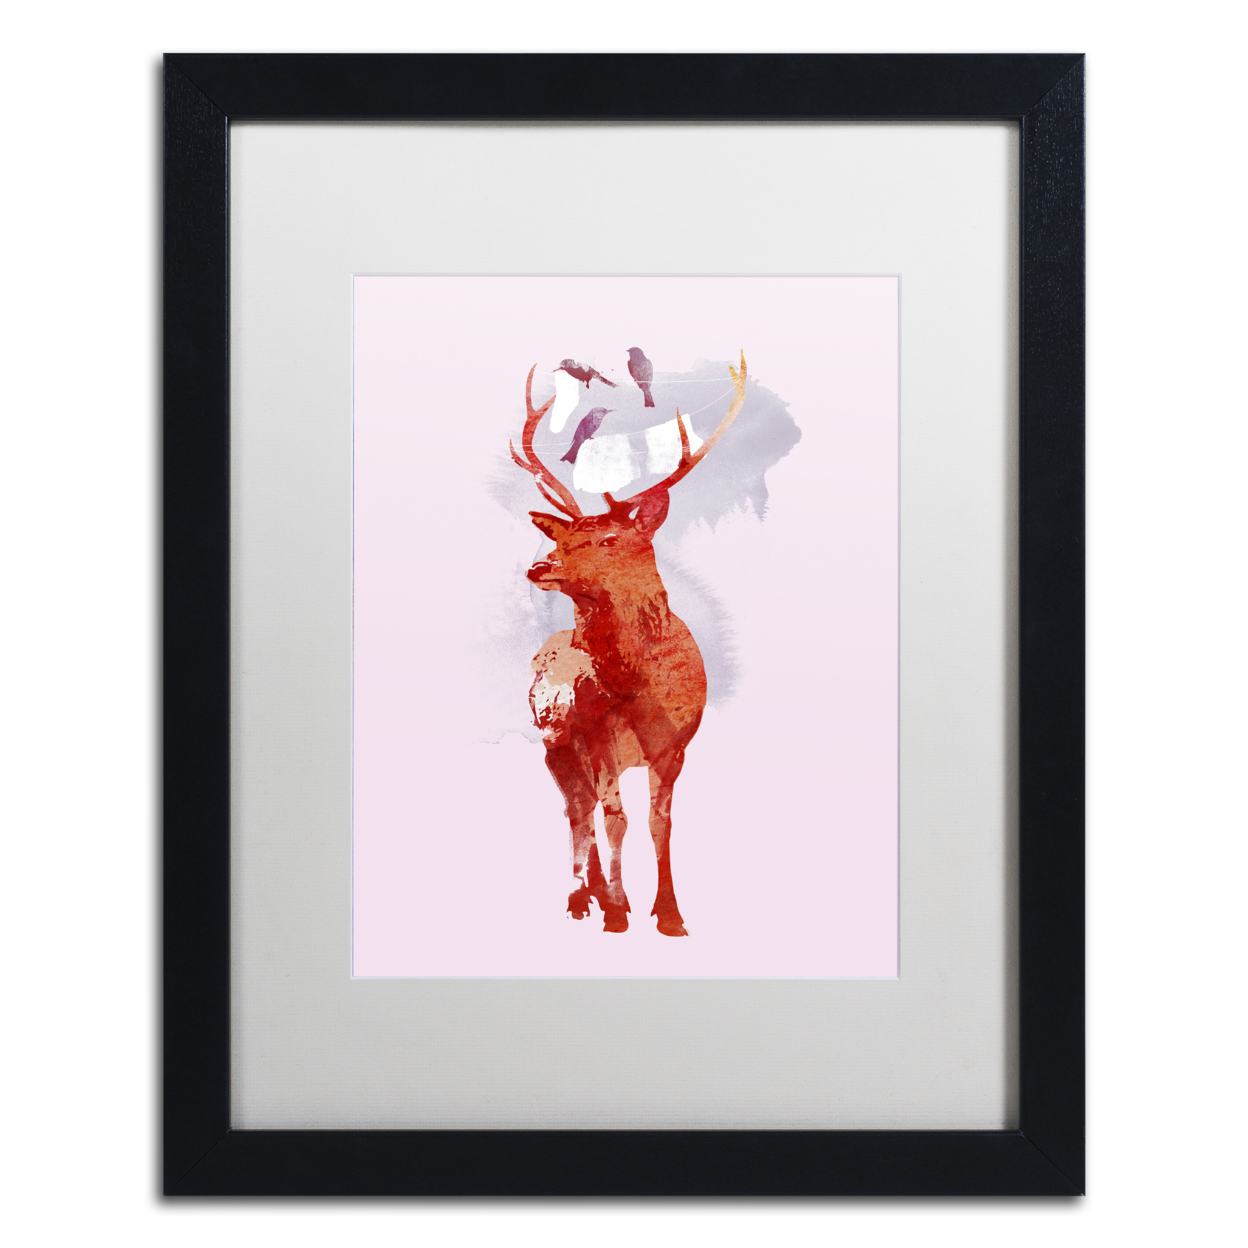 Robert Farkas 'Useless Deer' Black Wooden Framed Art 18 X 22 Inches